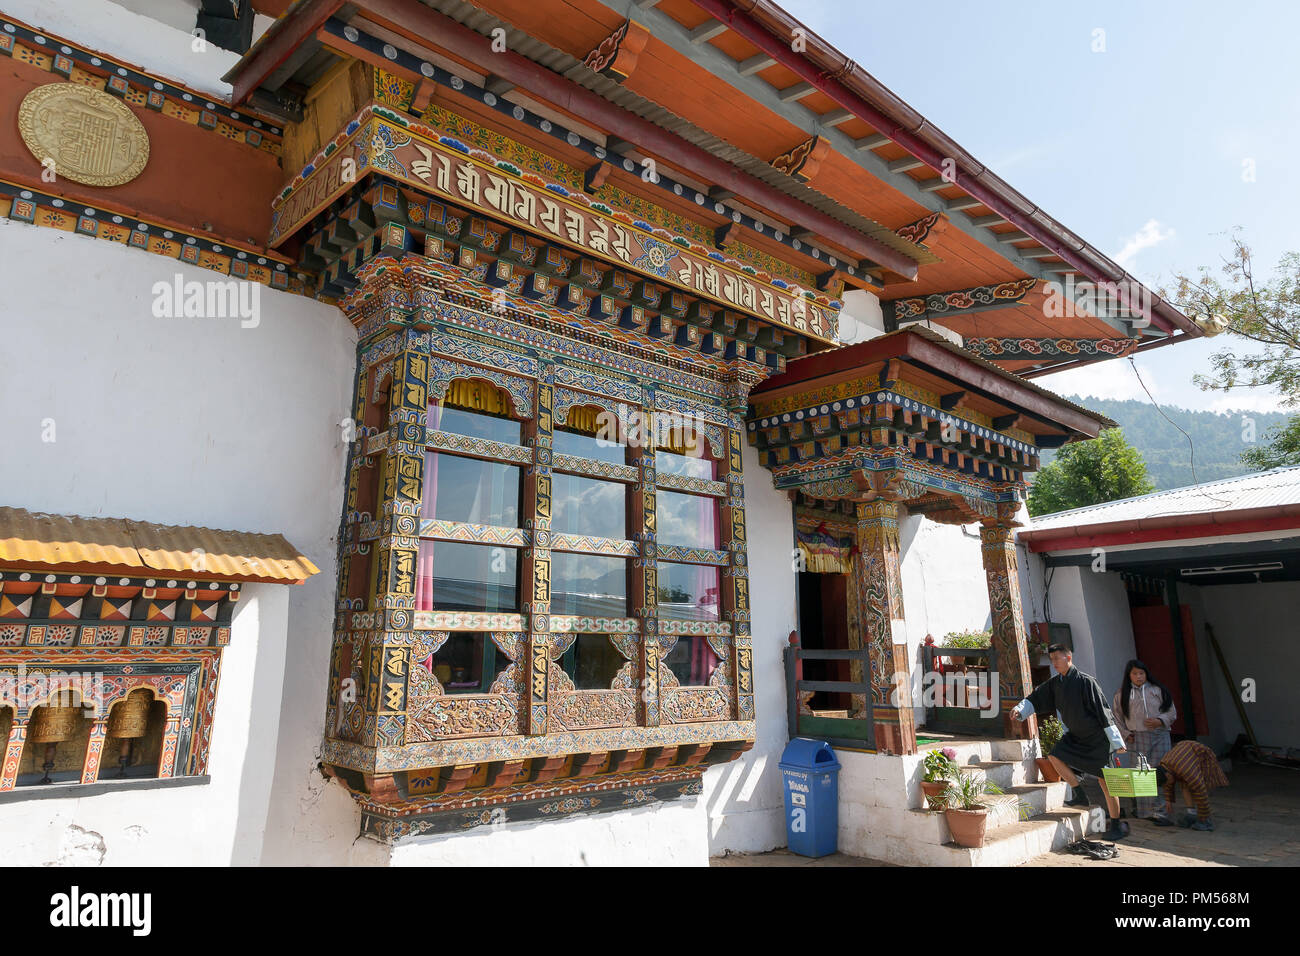 Chimi Lhakhang temple, est également connu comme le temple de la fertilité. Le Bhoutan. Banque D'Images